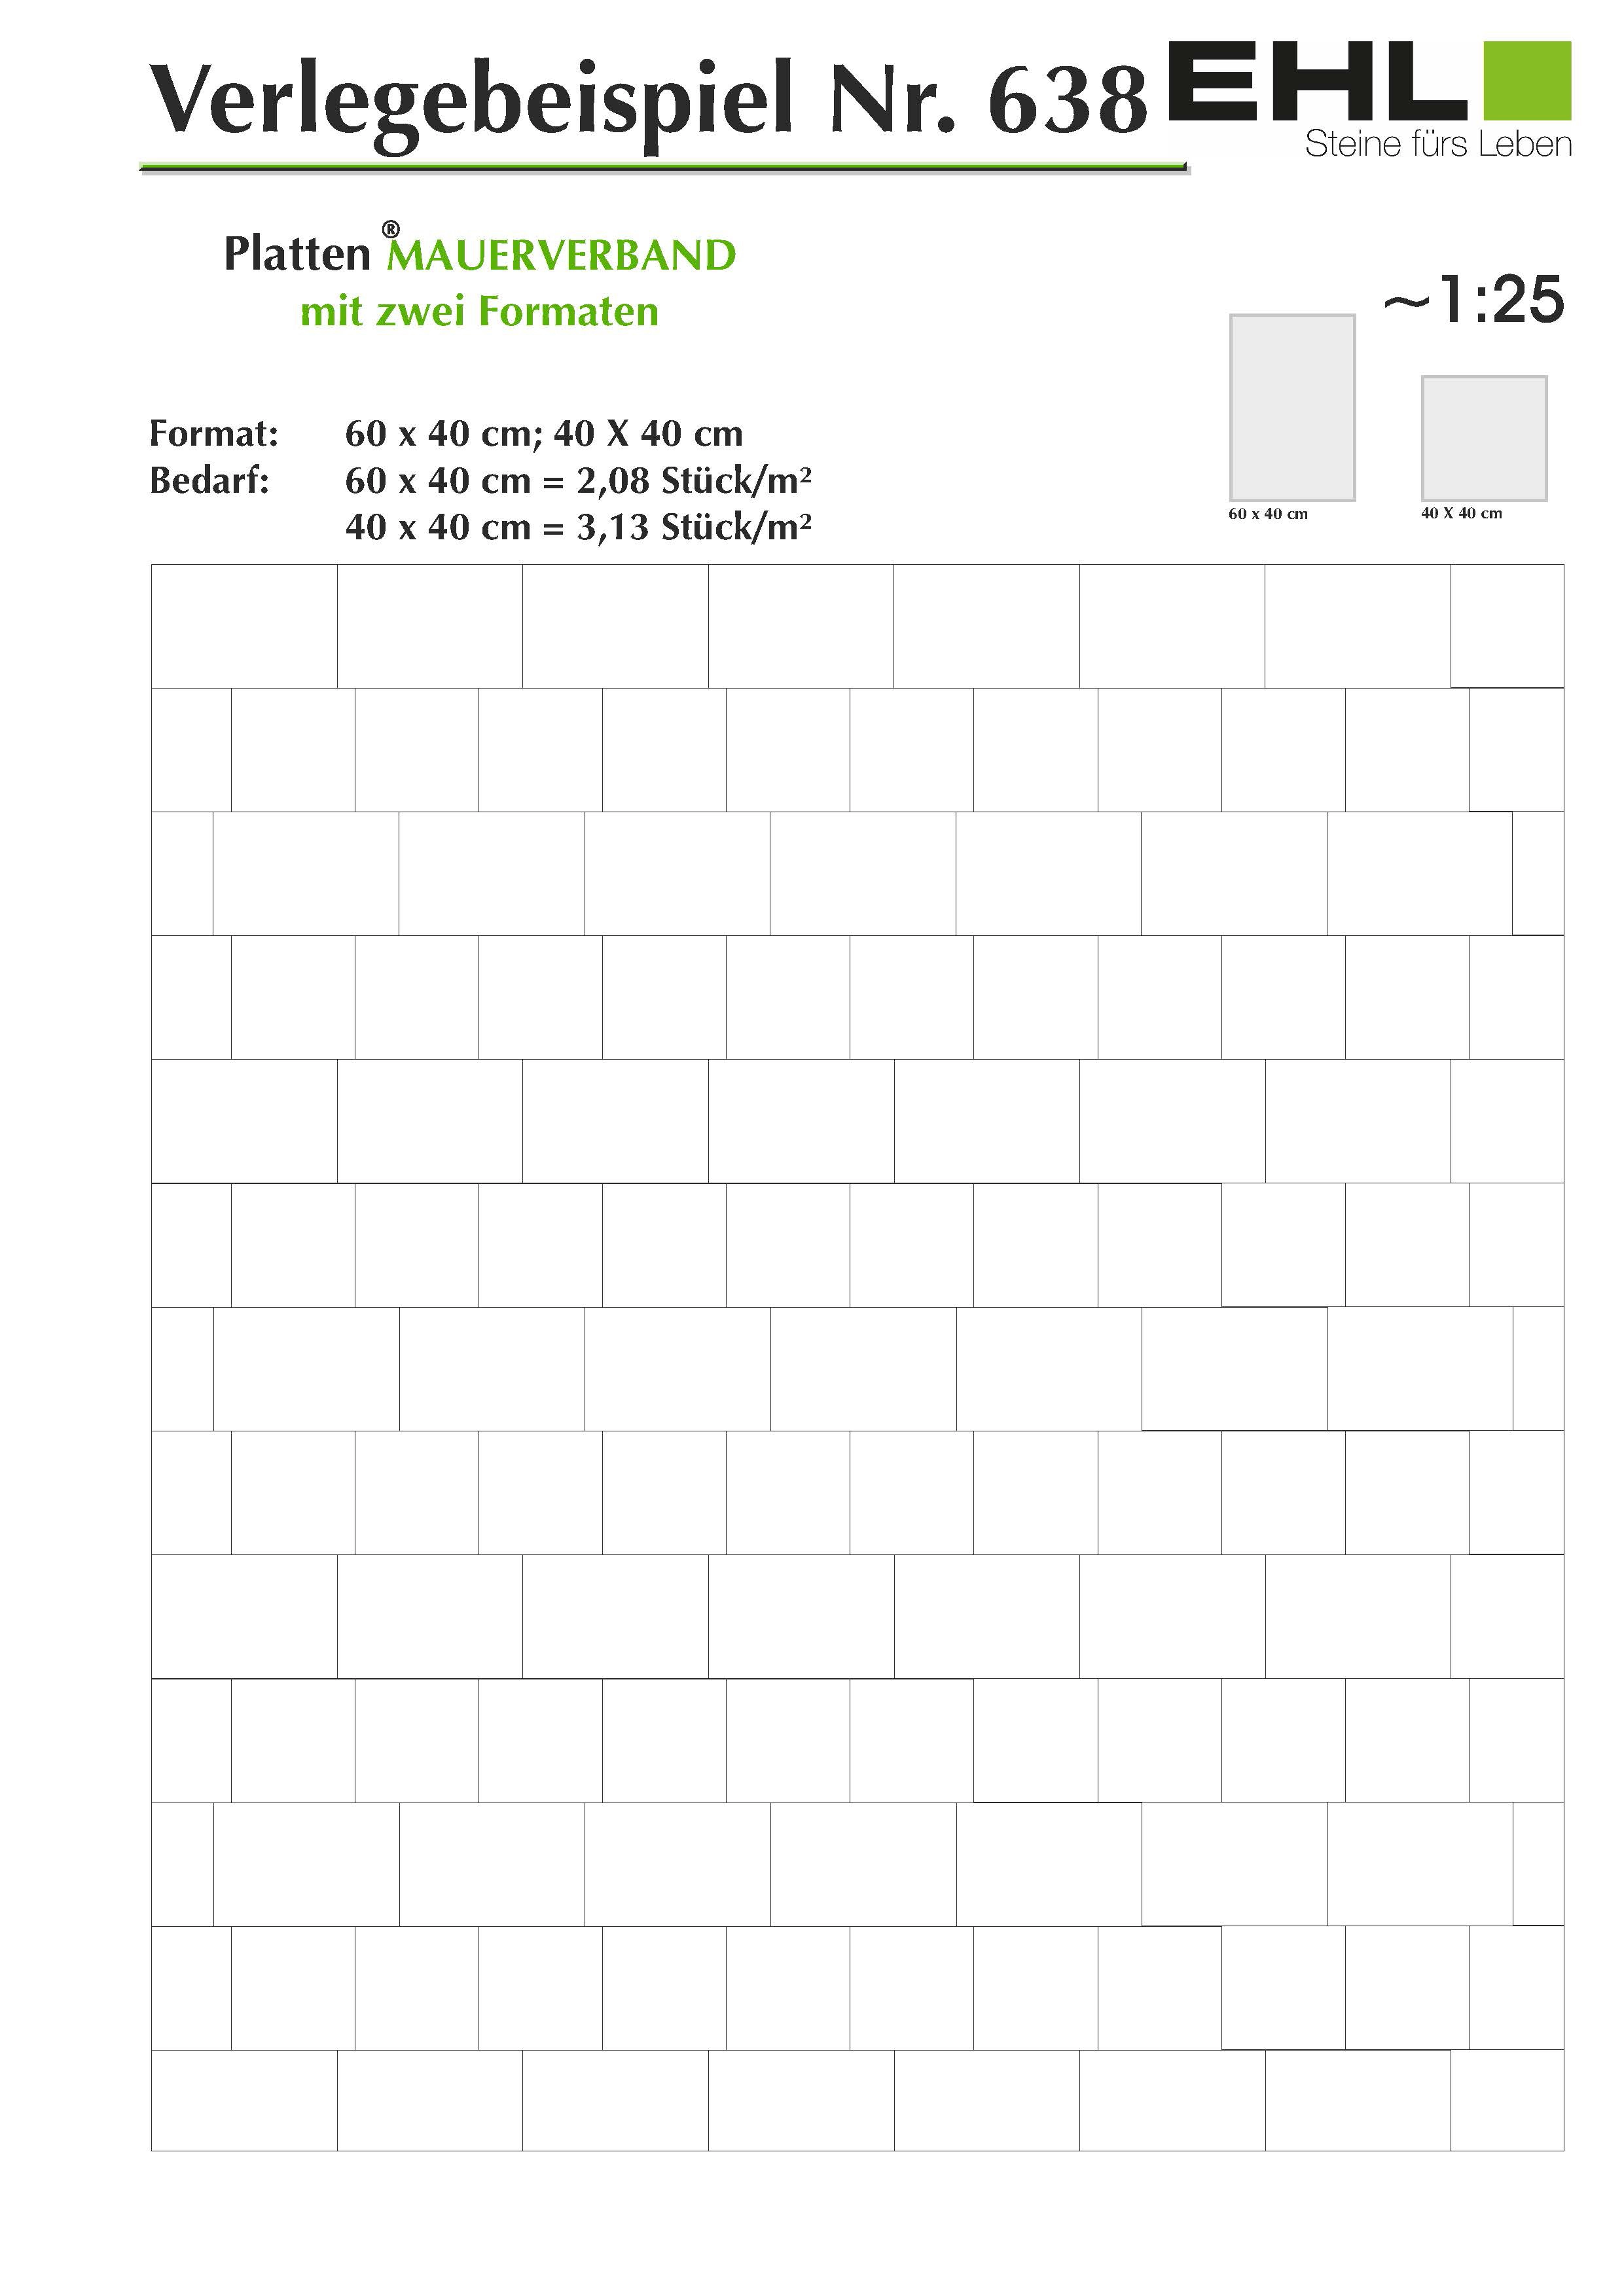 Terrassenplatte Beton Mesafino Grau beschichtet 40 cm x 40 cm x 4 cm kaufen  bei OBI